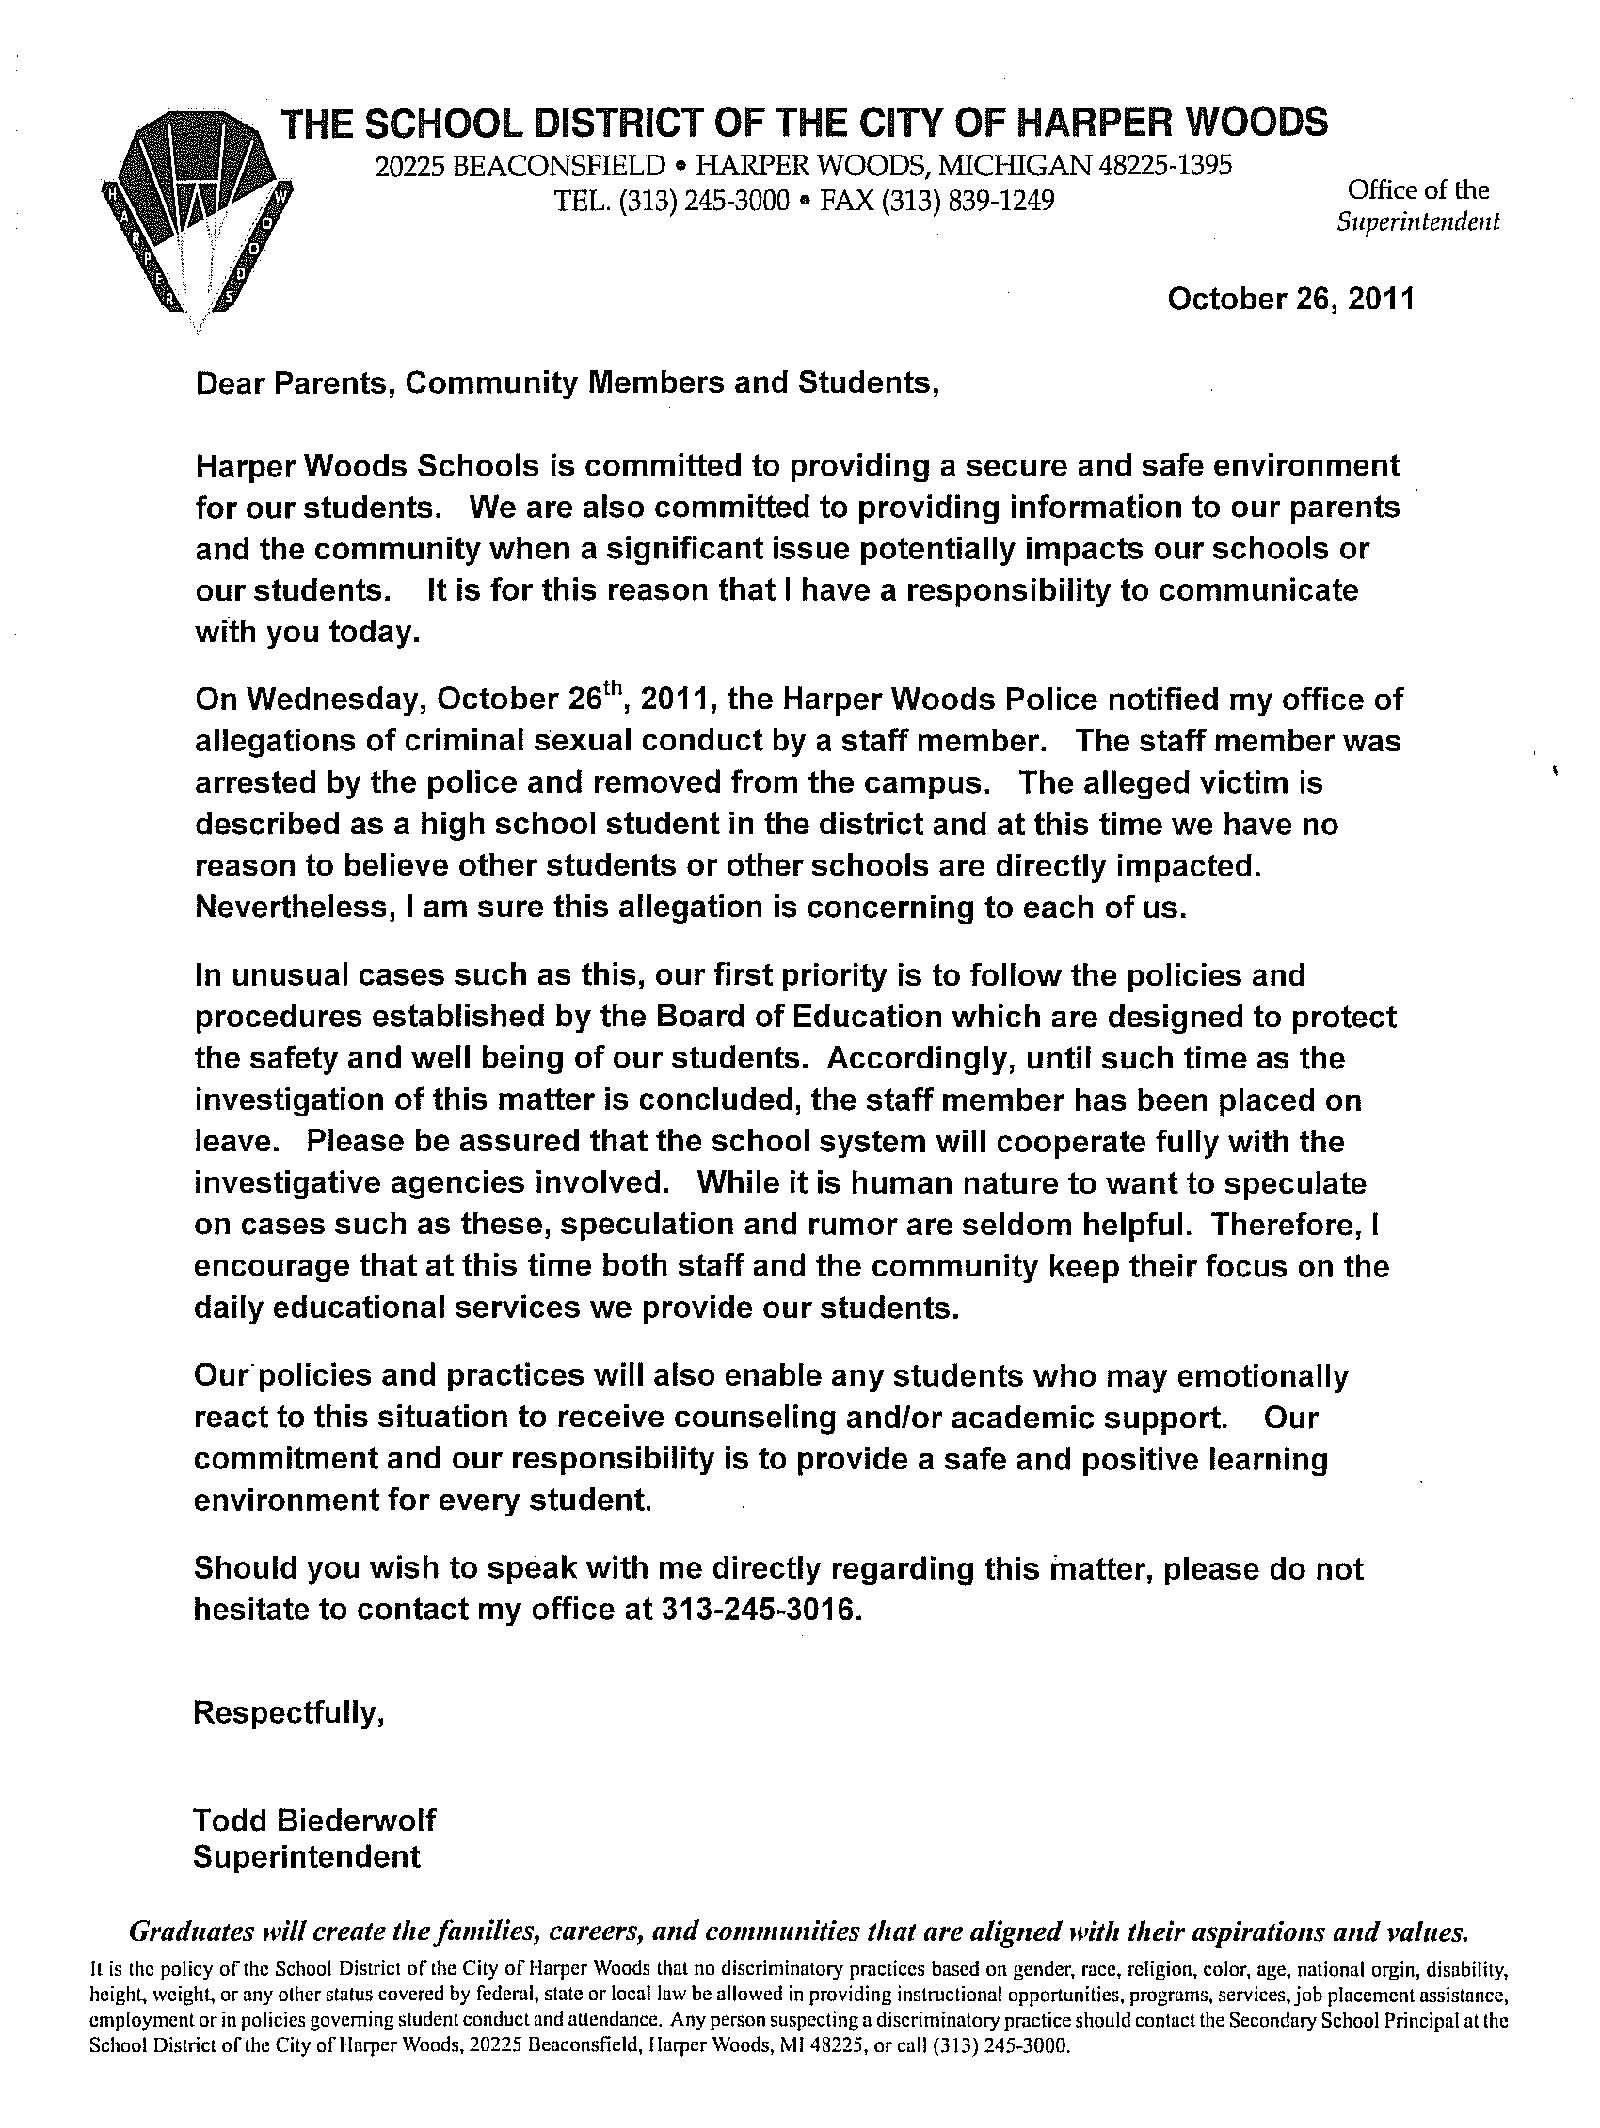 Harper Woods HS letter.png